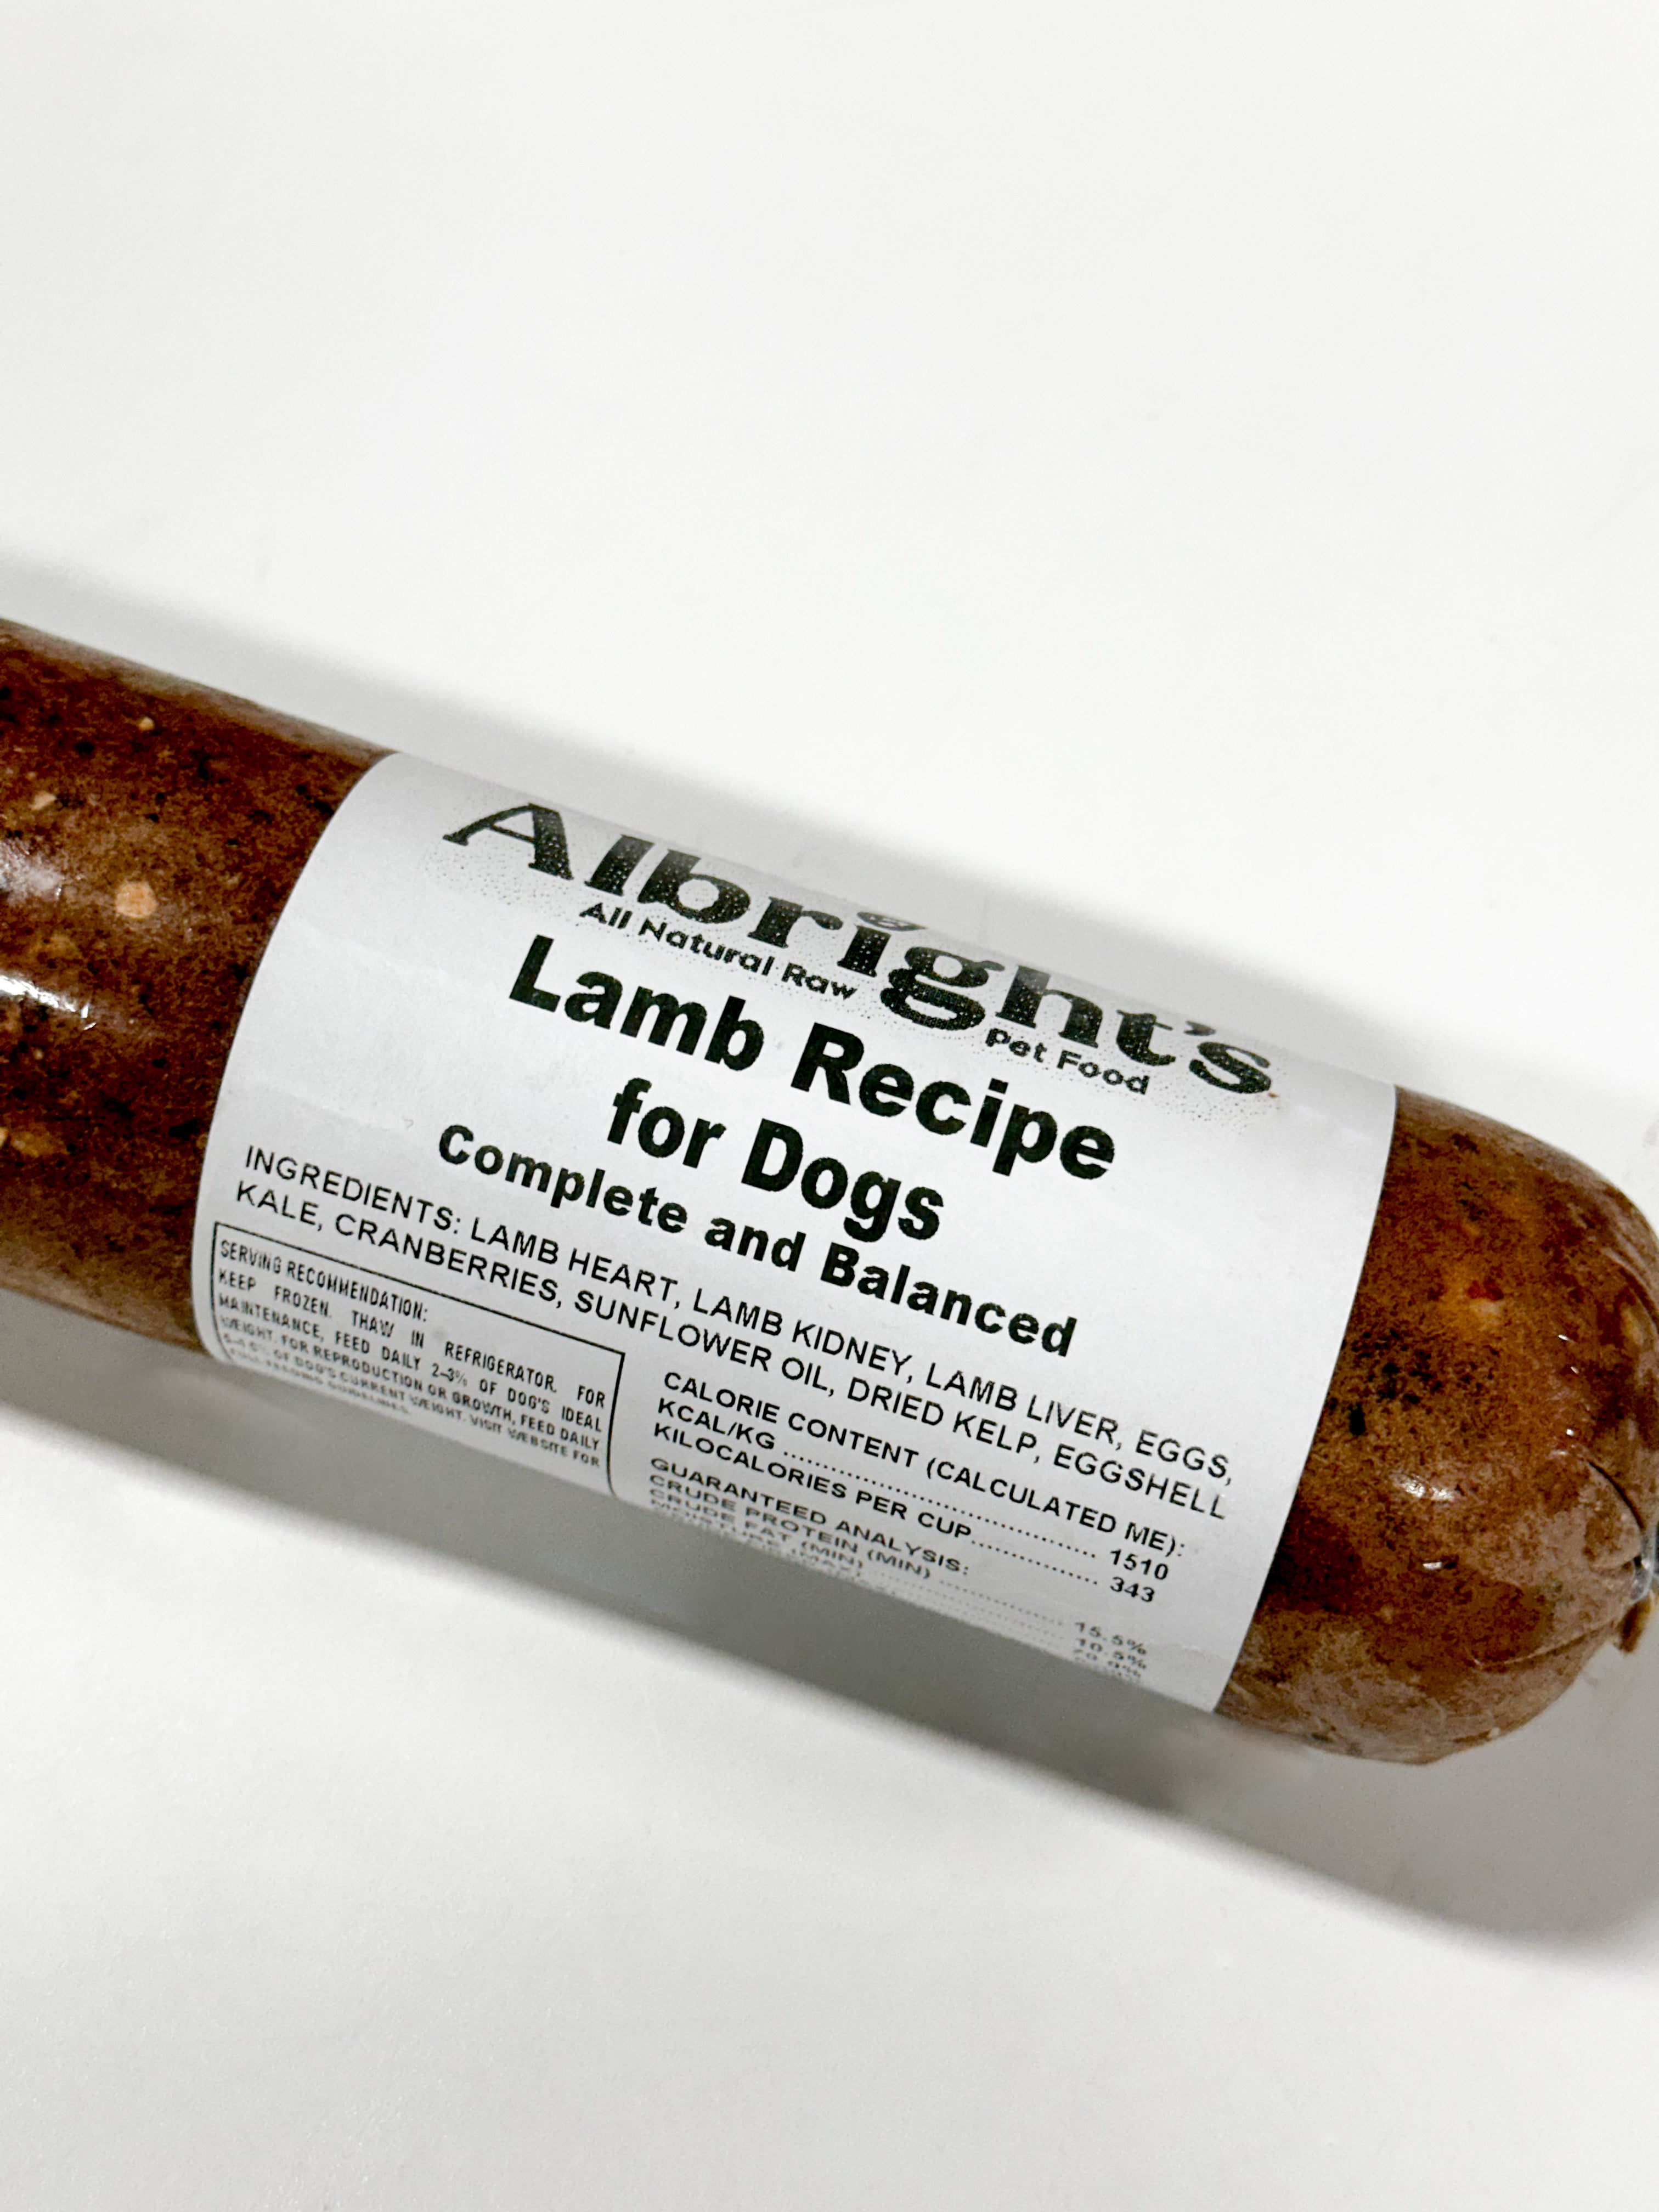 Albright's Lamb - 2 lb/Individual Roll